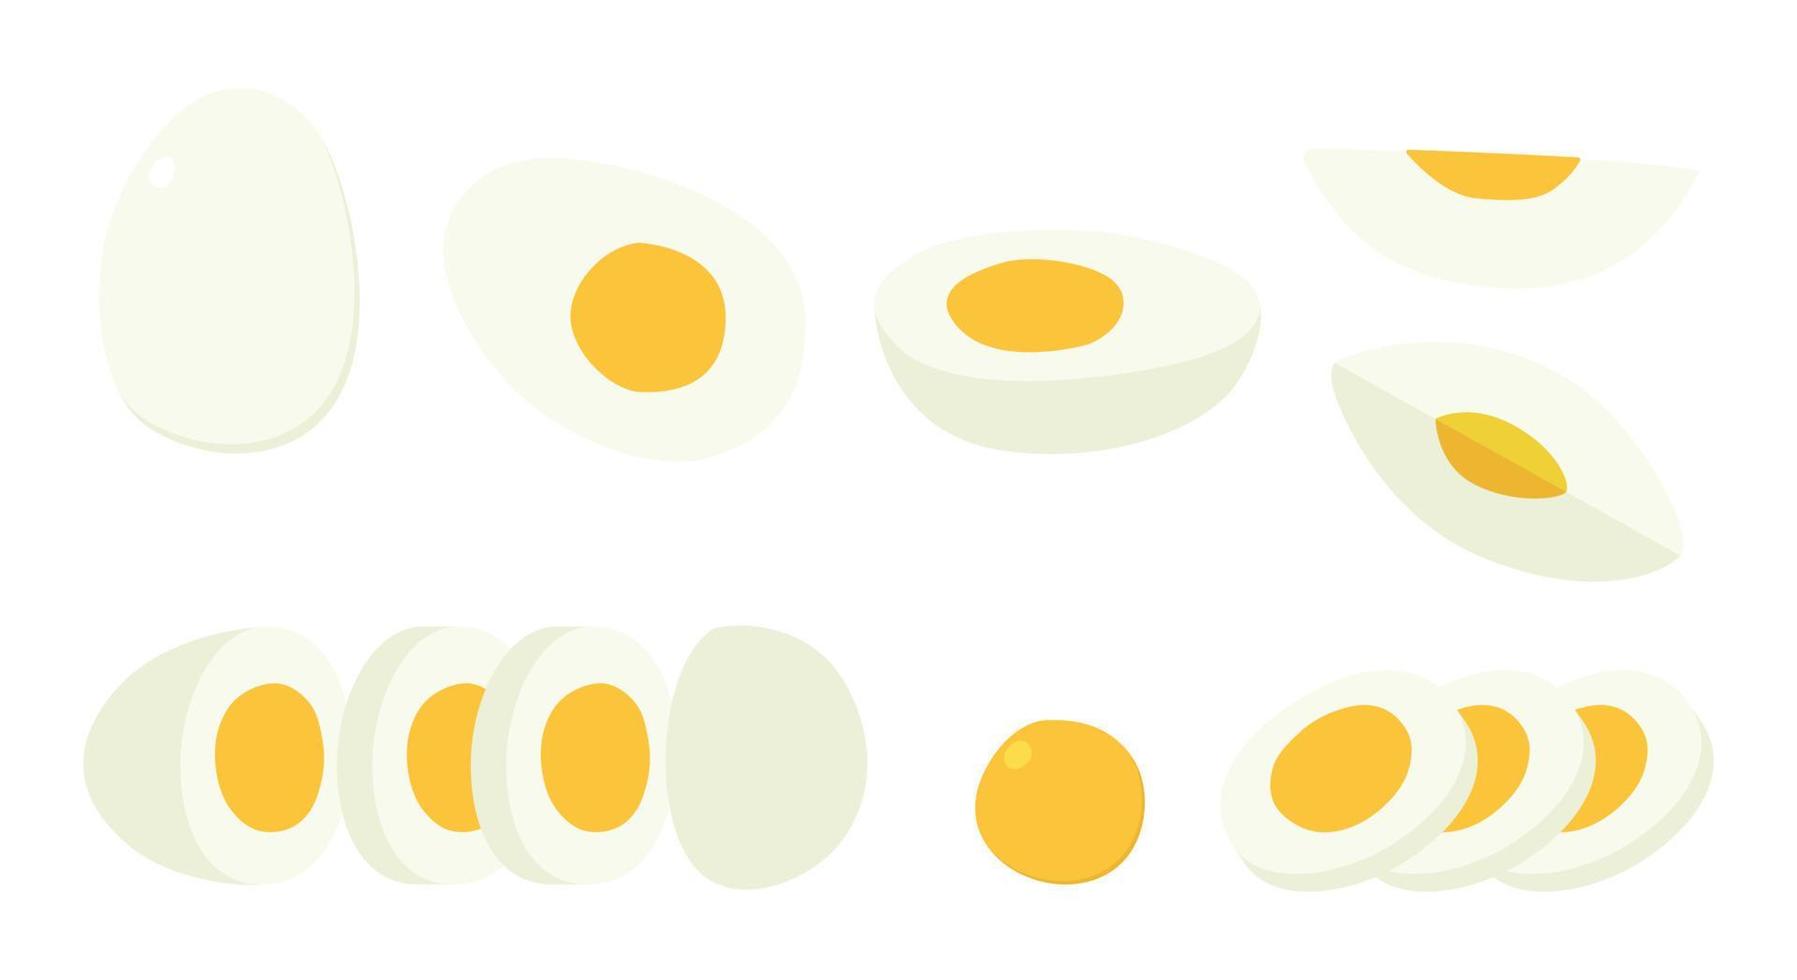 vektor uppsättning av skivad hård kokt ägg ClipArt. enkel hela, halv, en fjärdedel, skära skivad kokt ägg platt vektor illustration isolerat. vit kokt kyckling ägg med gul äggula tecknad serie hand dragen stil